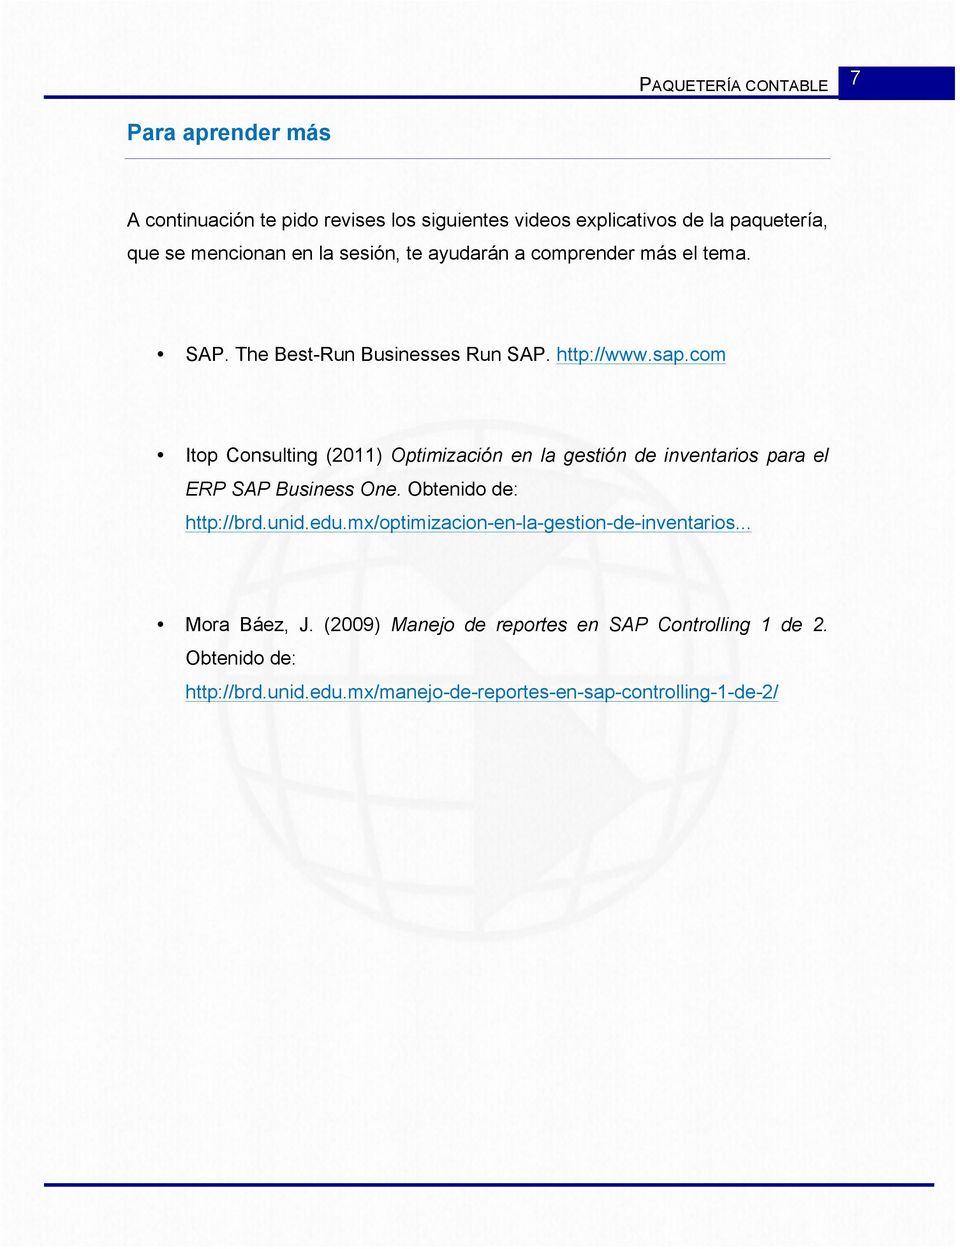 com Itop Consulting (2011) Optimización en la gestión de inventarios para el ERP SAP Business One. Obtenido de: http://brd.unid.edu.